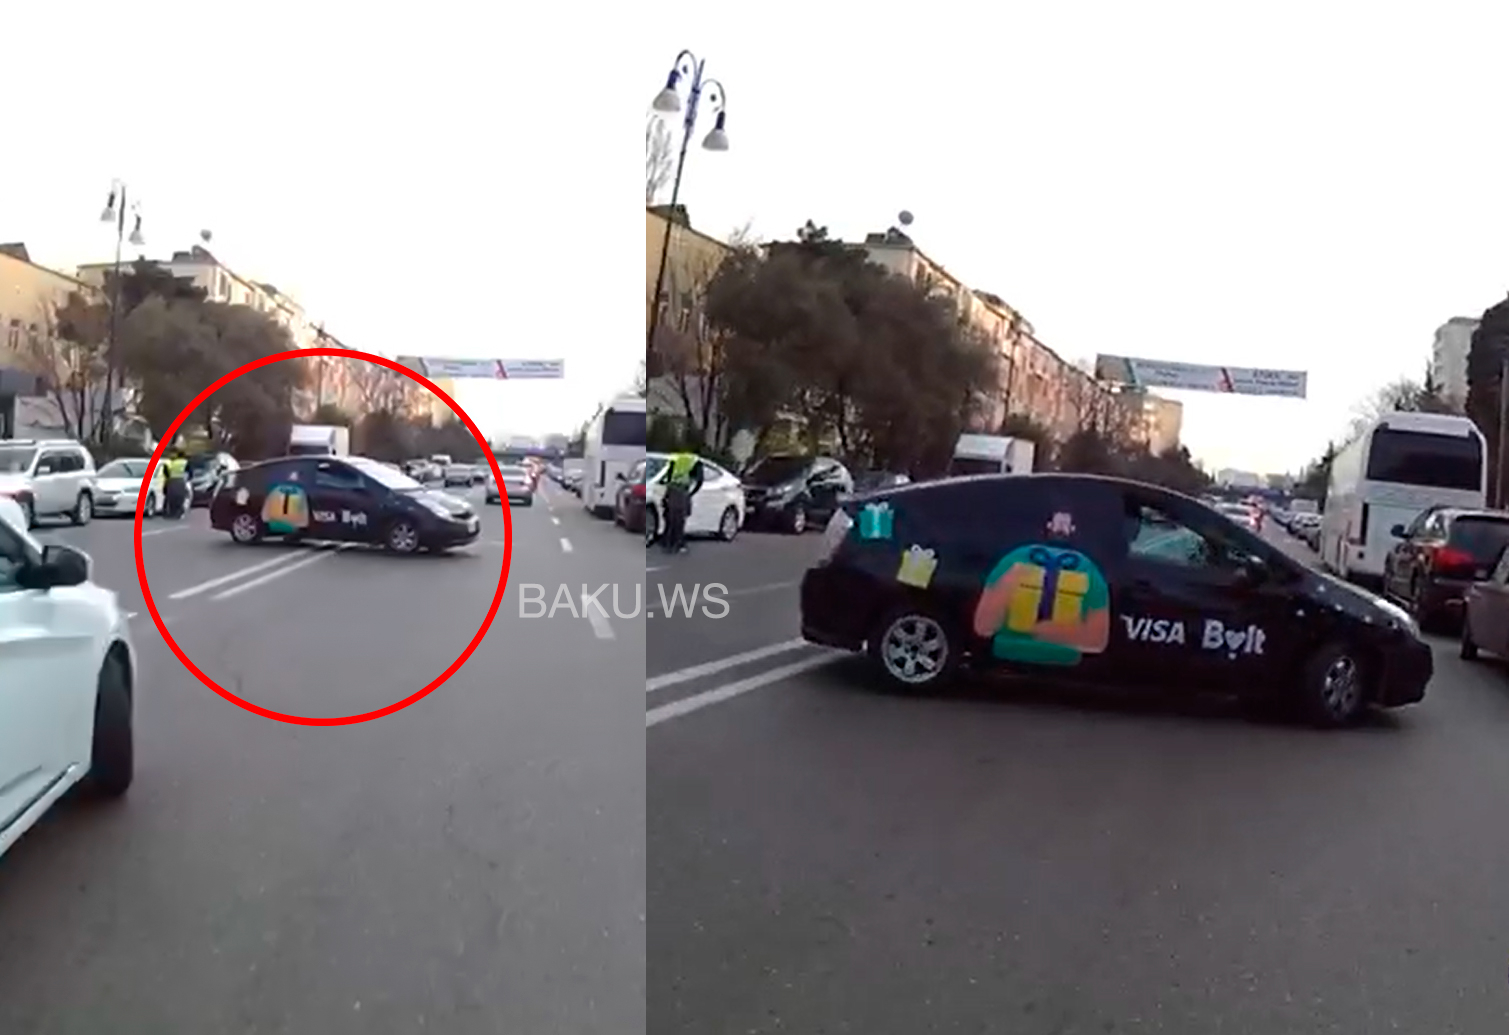 Мотоциклист взлетел в воздух после столкновения с автомобилем в Баку - ВИДЕО